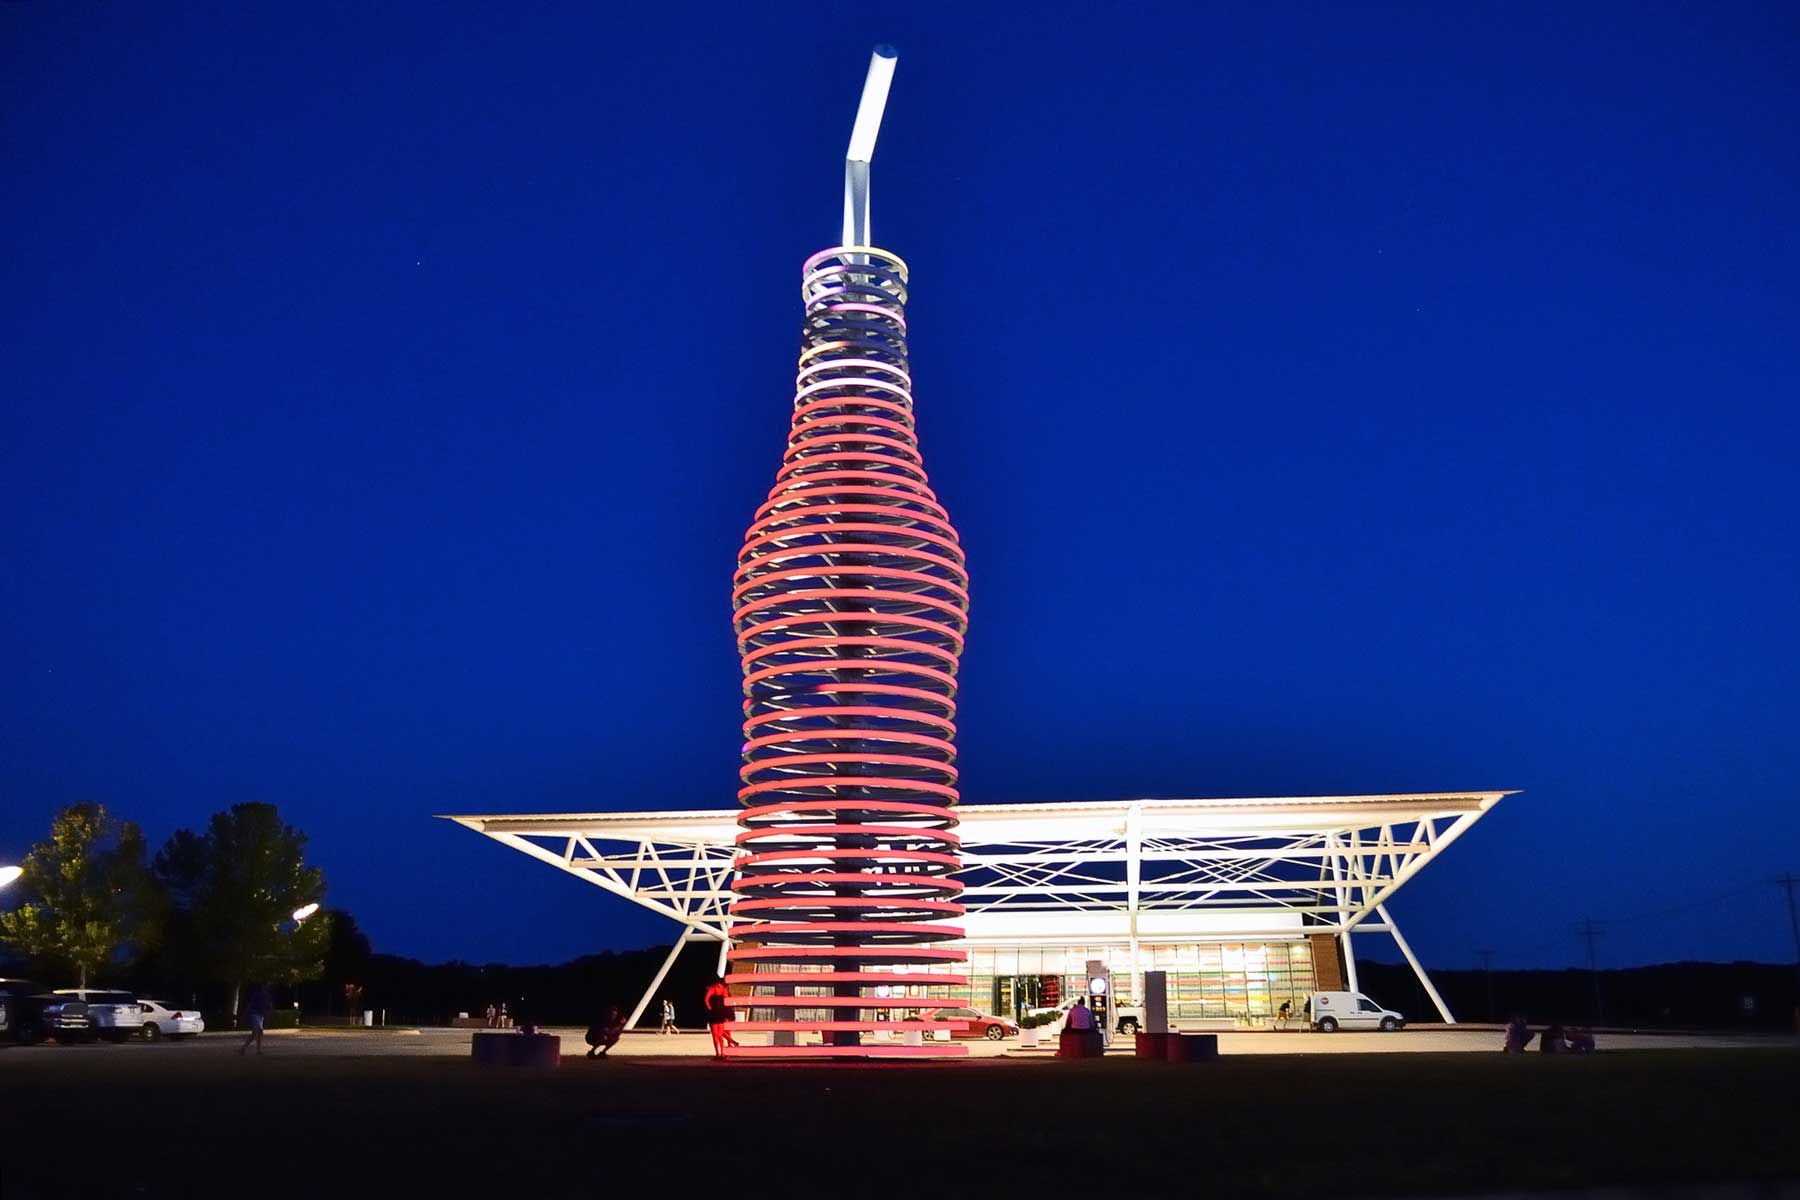 ruta 66 kroz Arcadia, Oklahoma, i ne možete propustiti neonsku bocu gaziranog pića visoku 66 metara ispred POPS-a